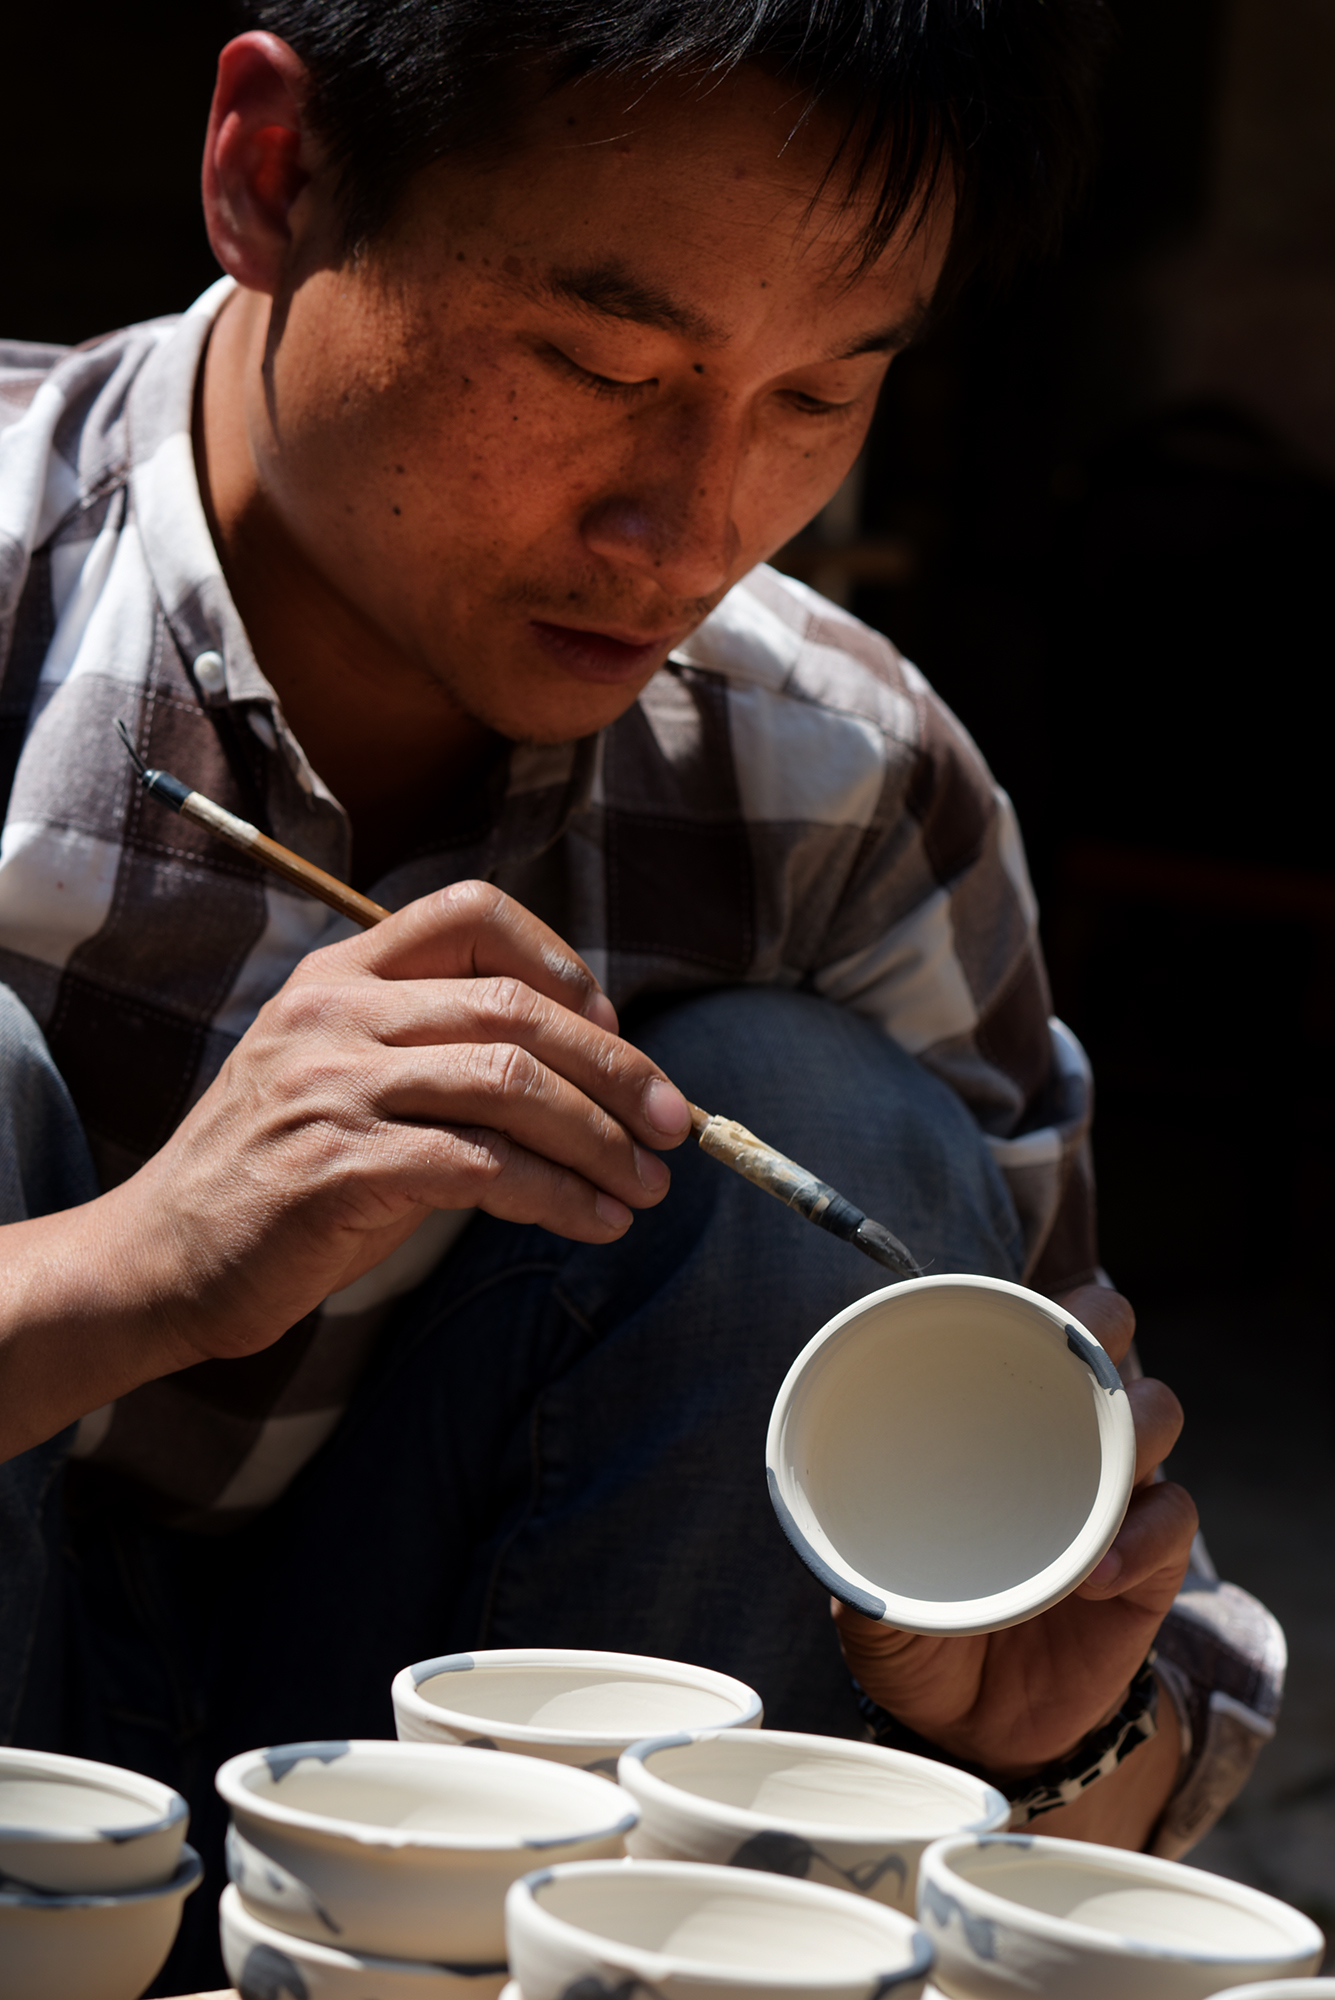  Hua Ning pottery, Wan yao village 